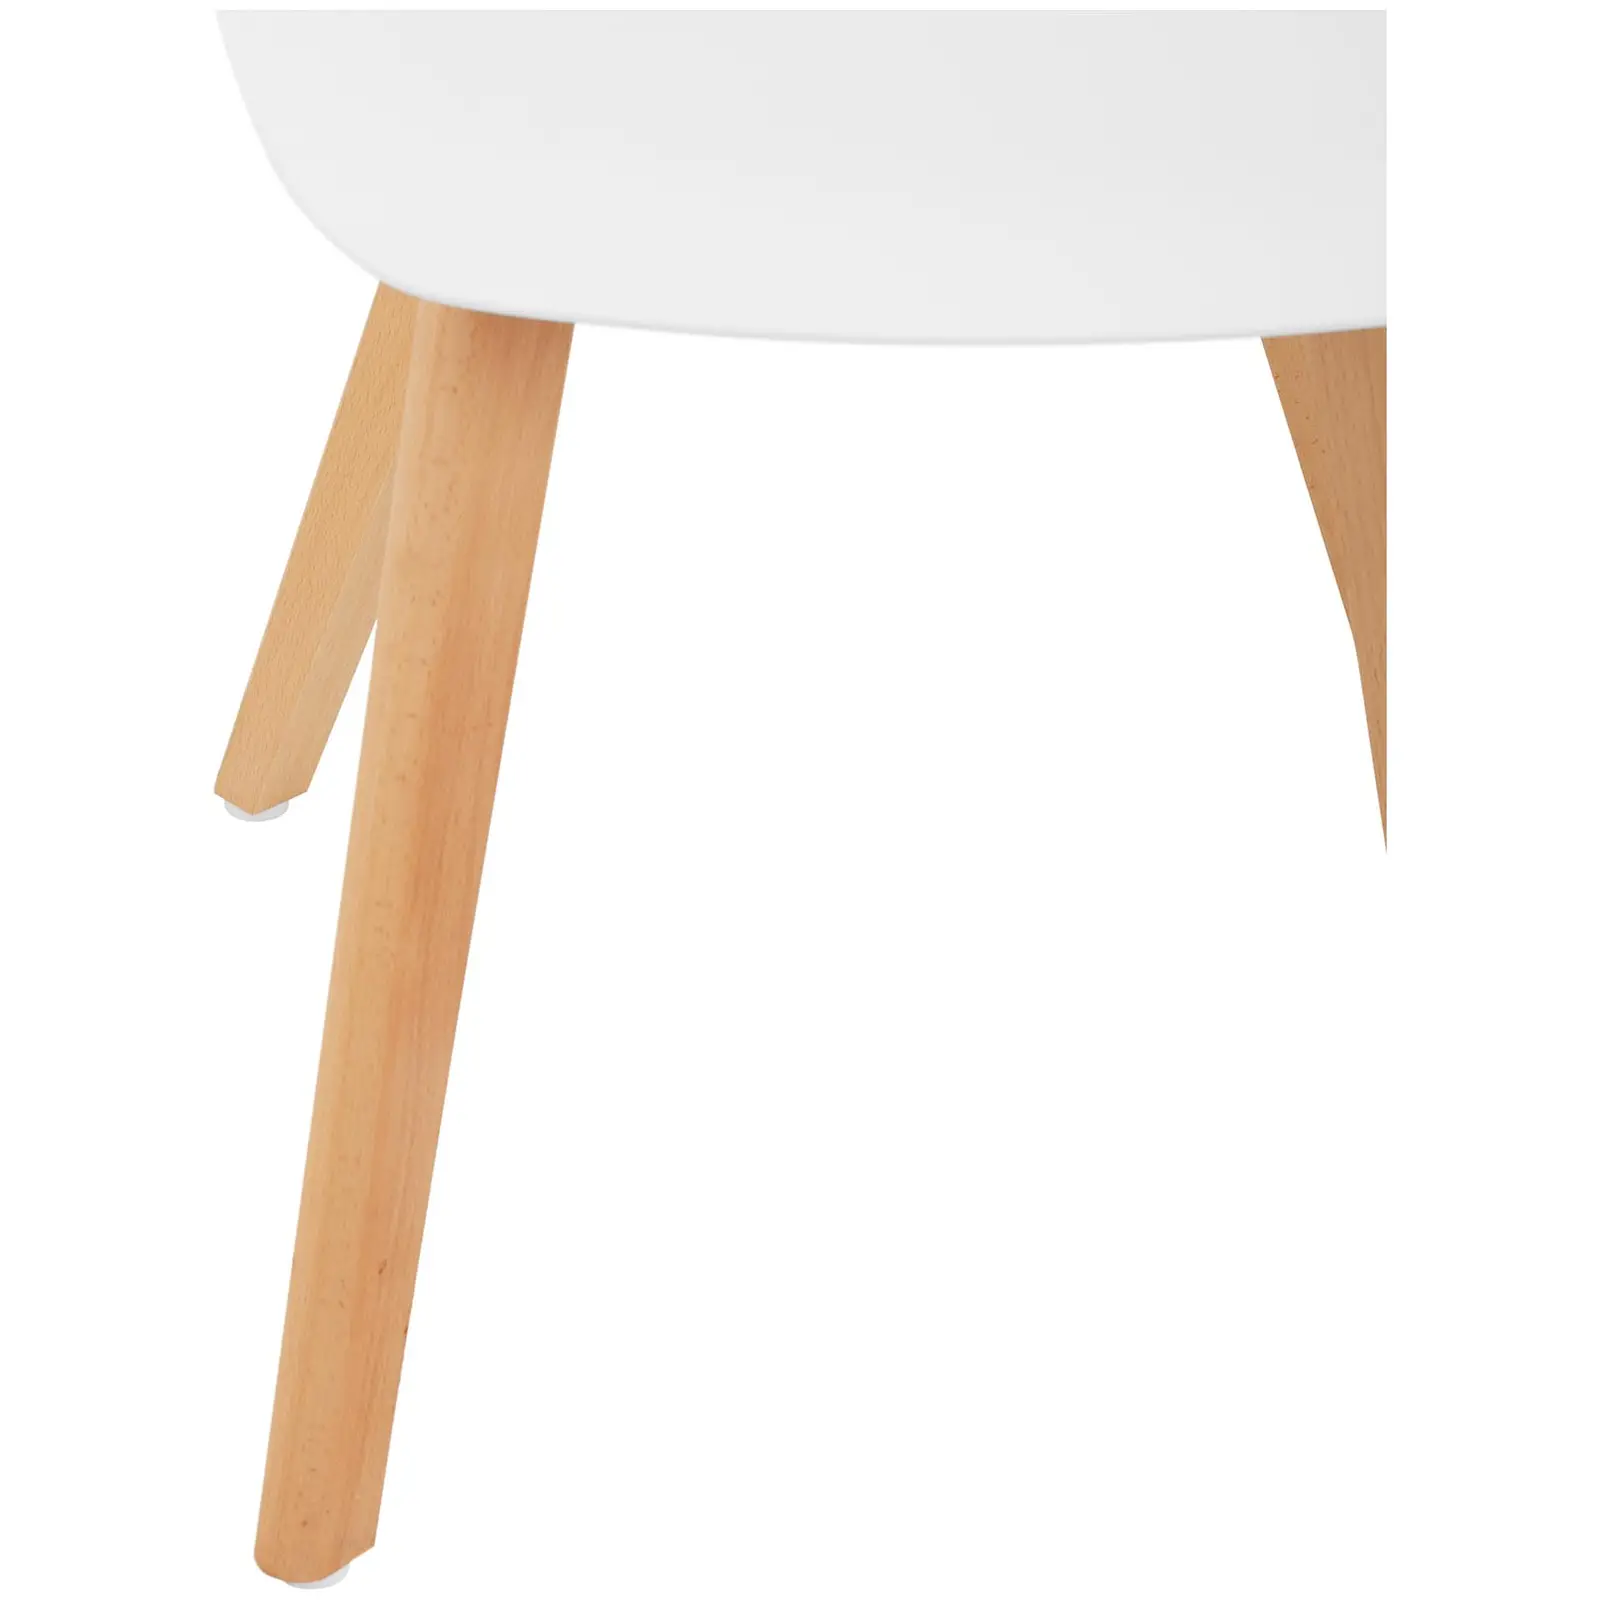 Chaise - Lot de 2 - 150 kg max. - Surface d'assise de 40 x 38 cm - Coloris blanc